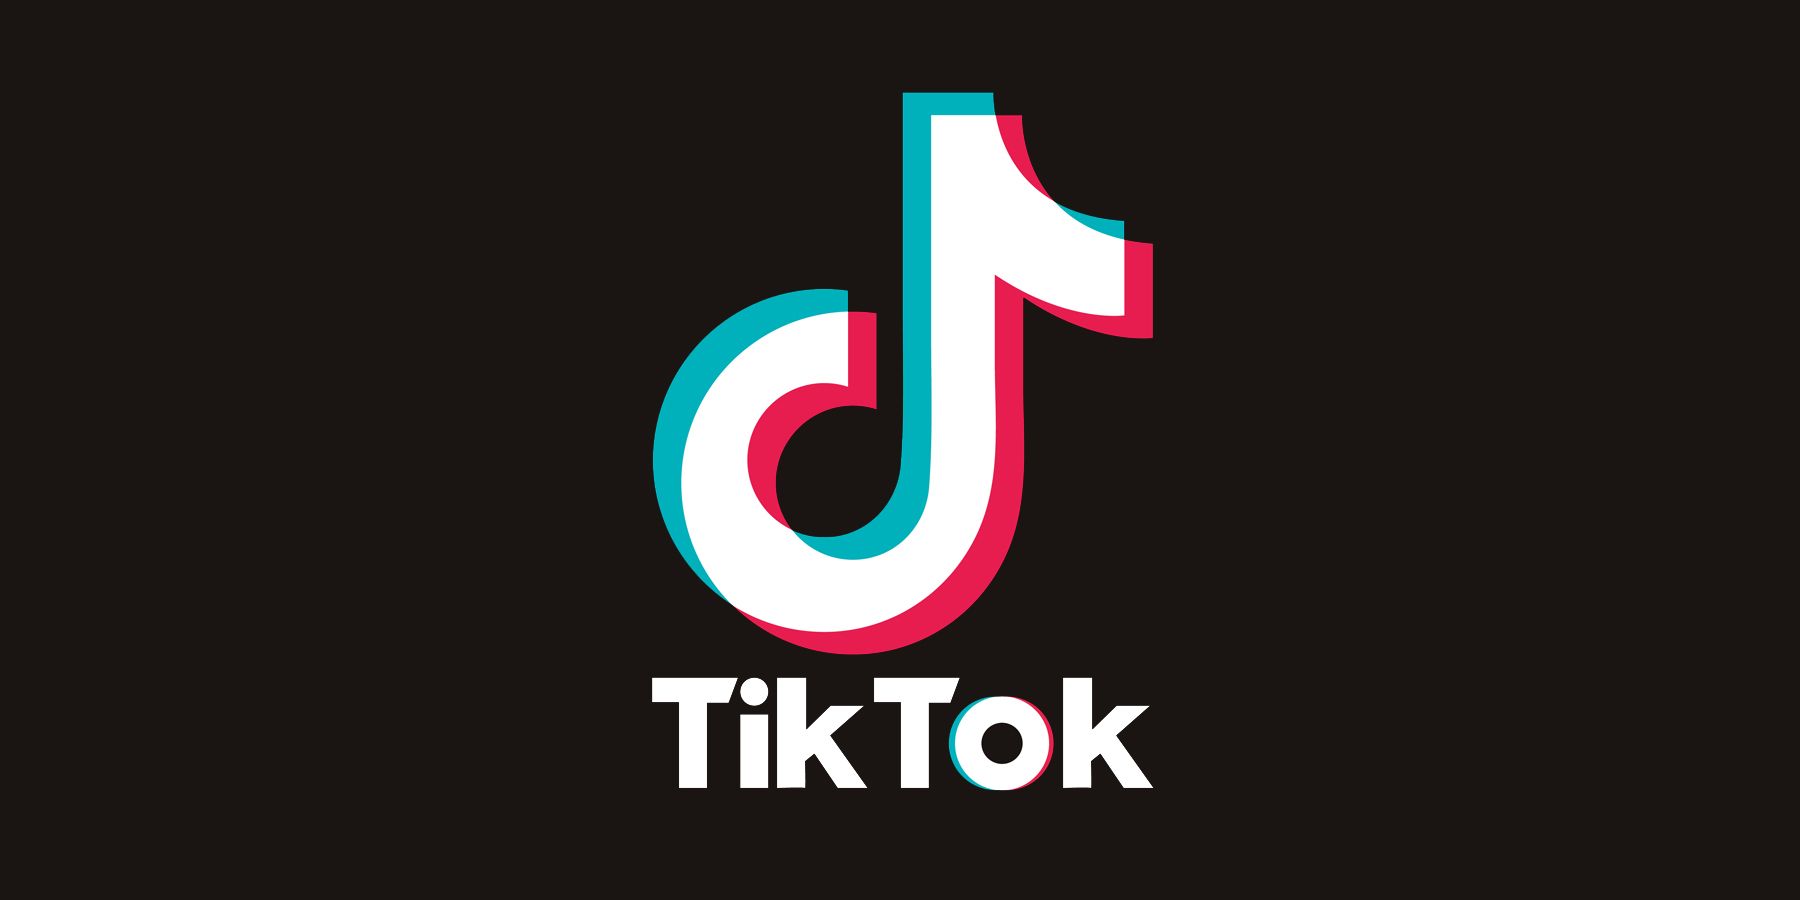 TikTok logo on black